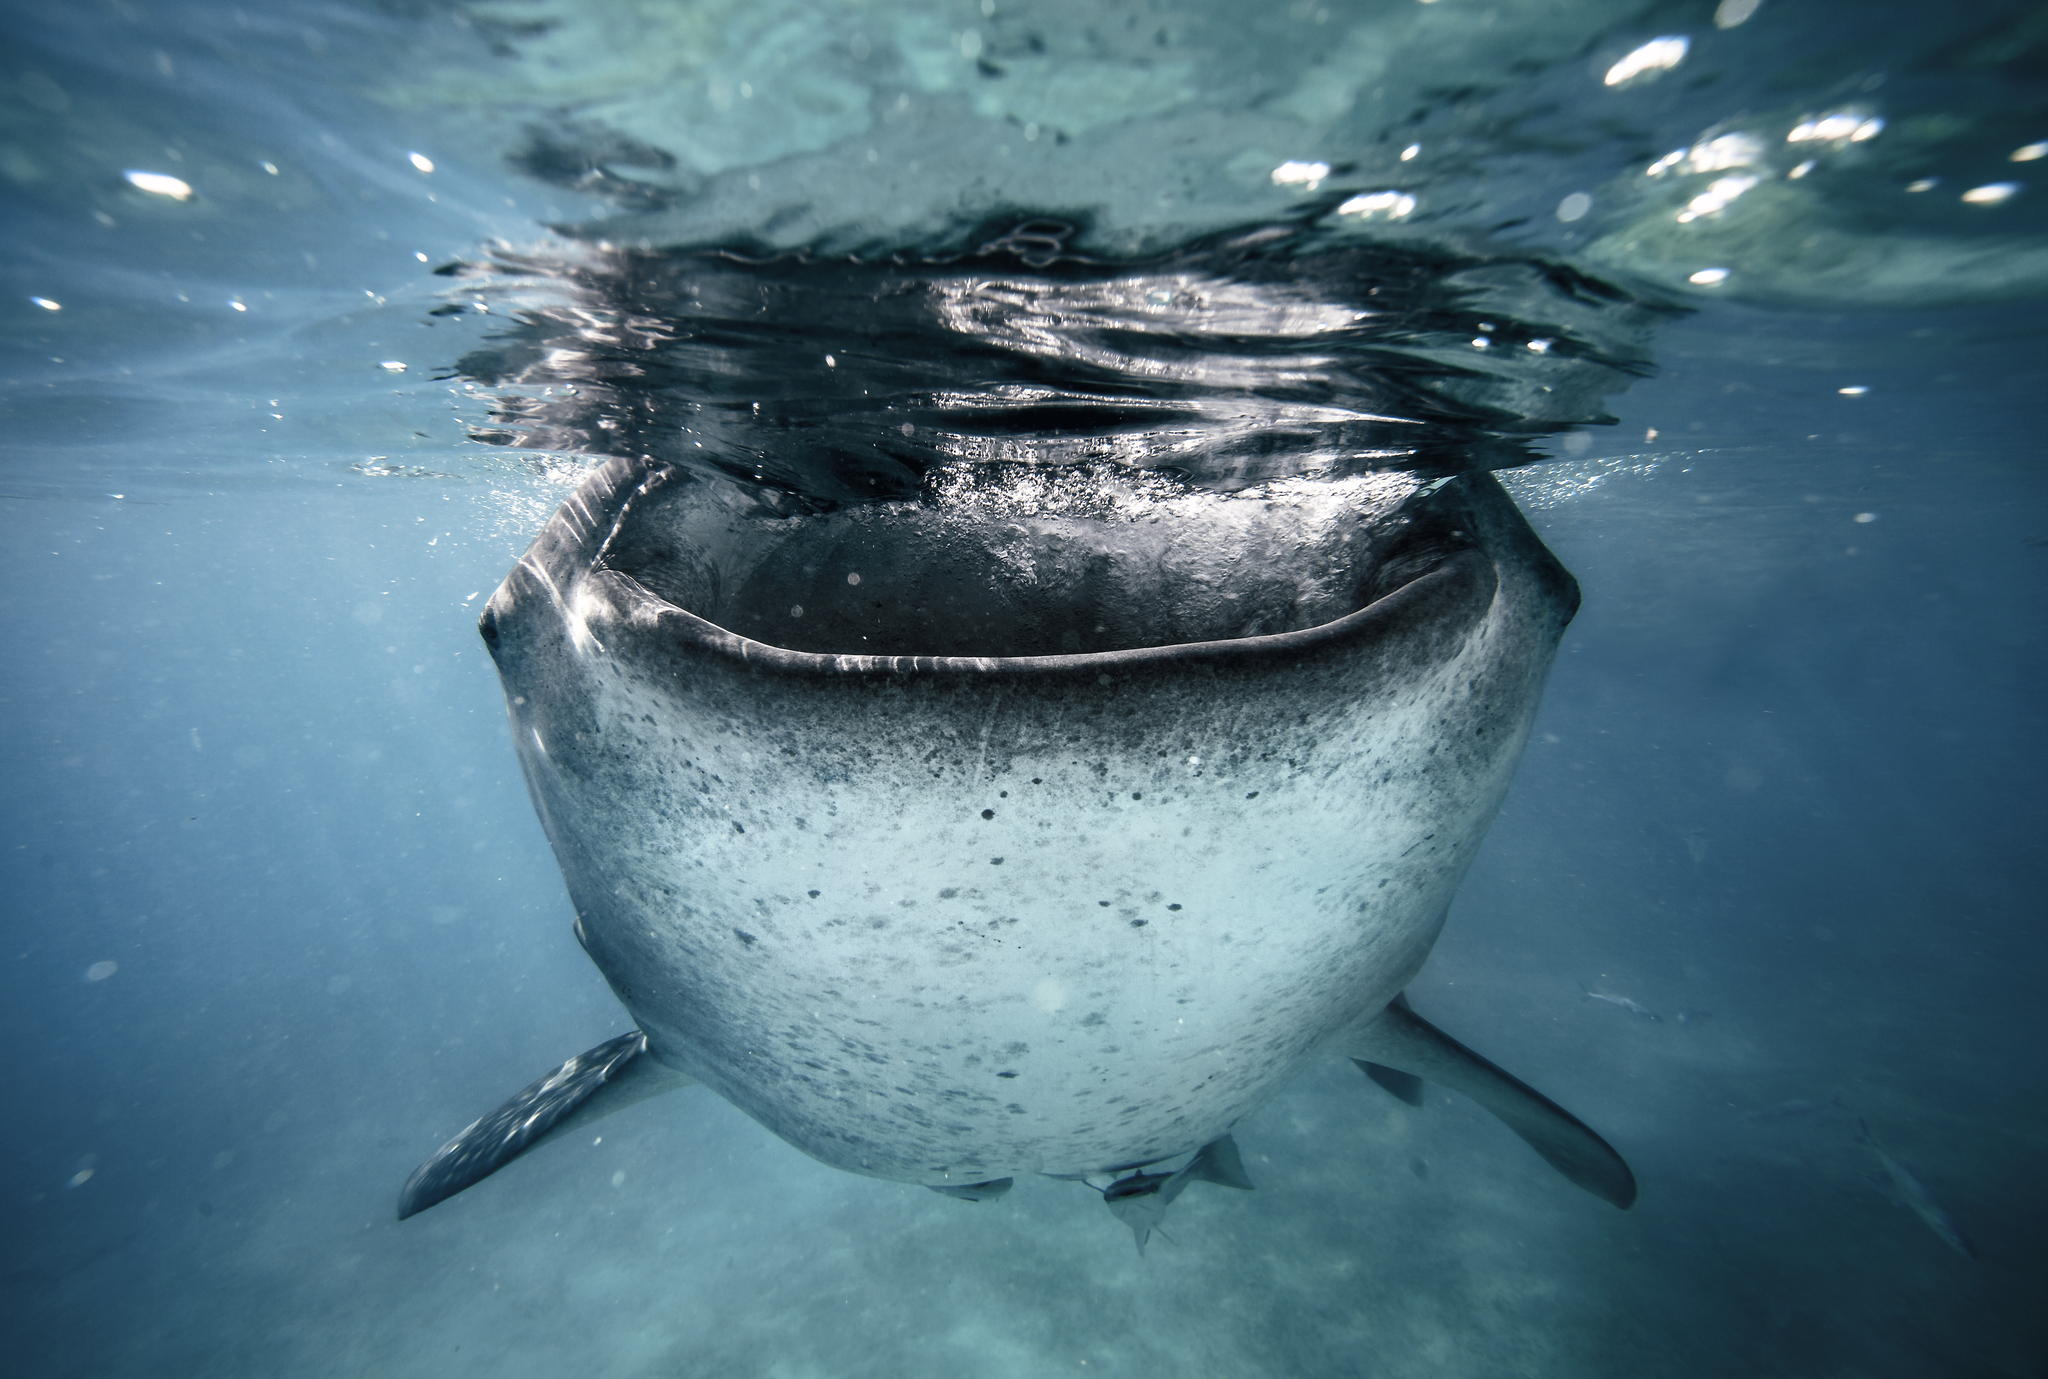 Best of 2014: Top 10 Underwater Photos